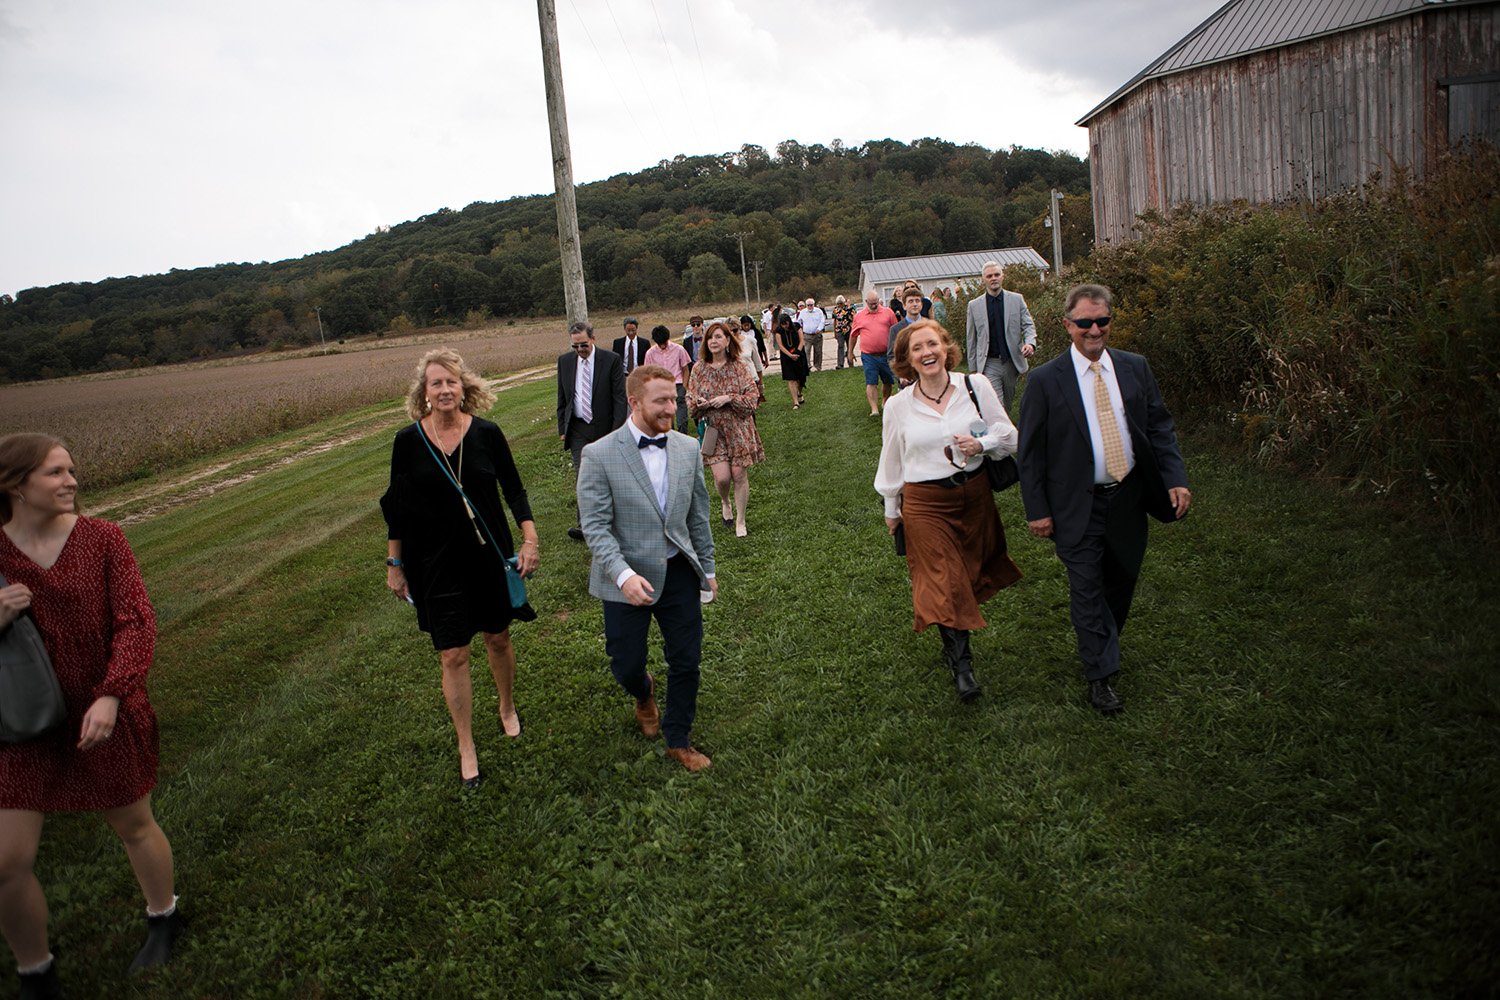 Octagon barn wedding photos010.jpg